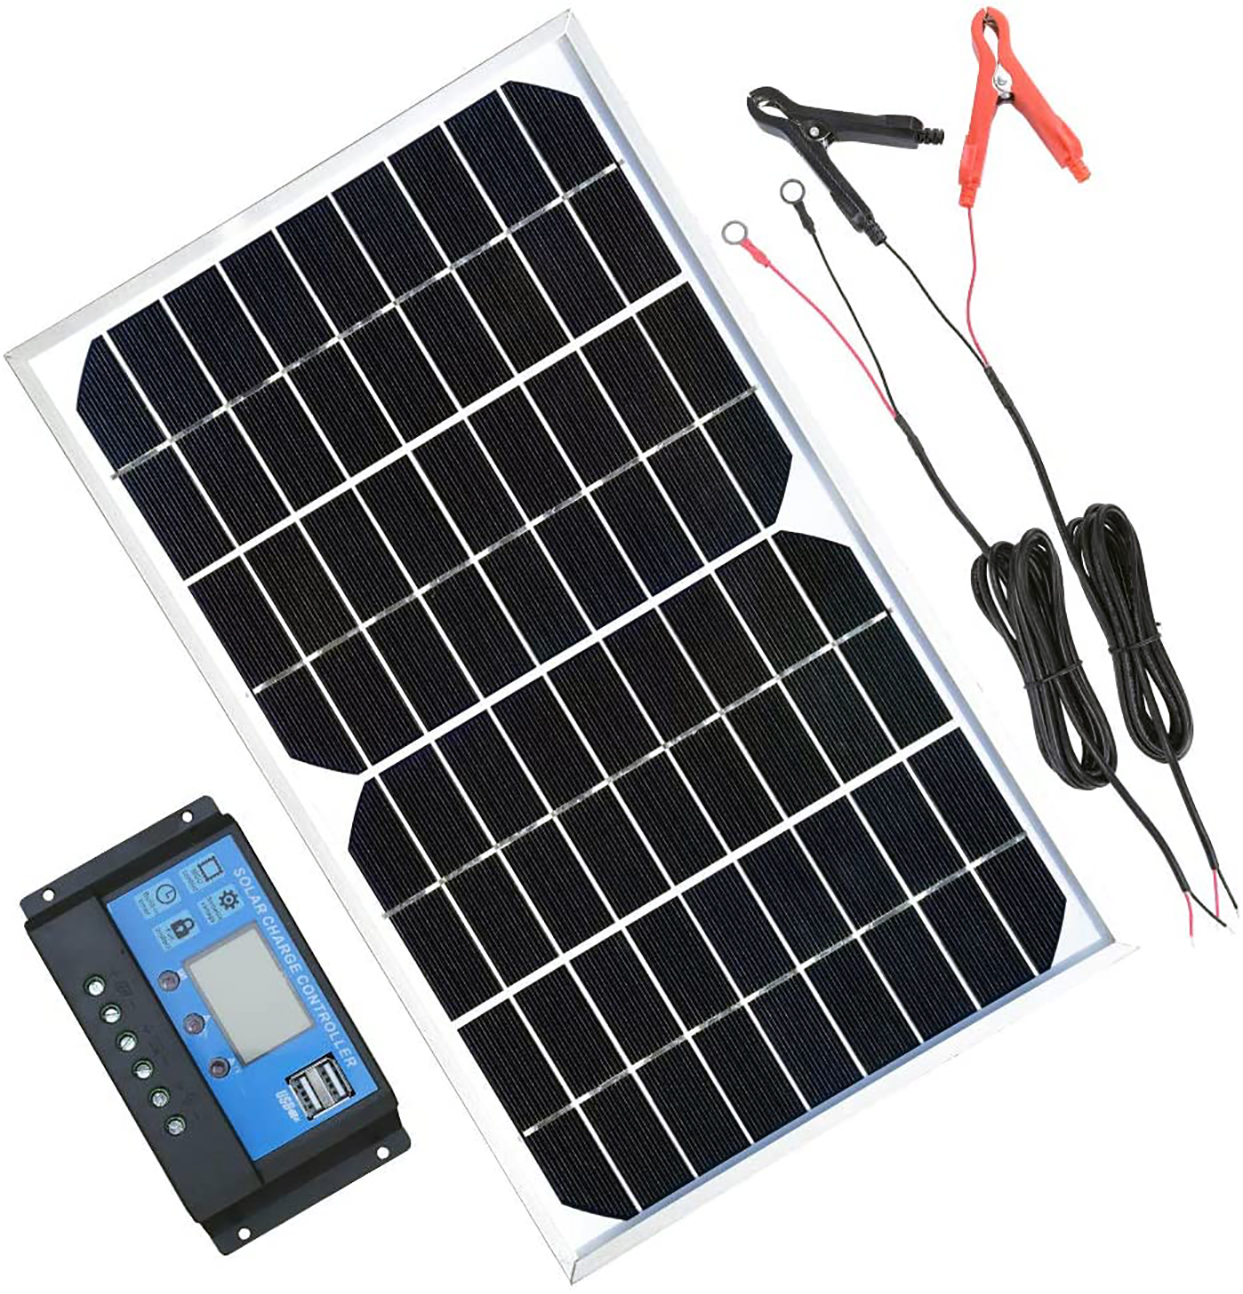 Solar Panel Kit 10W 12V review